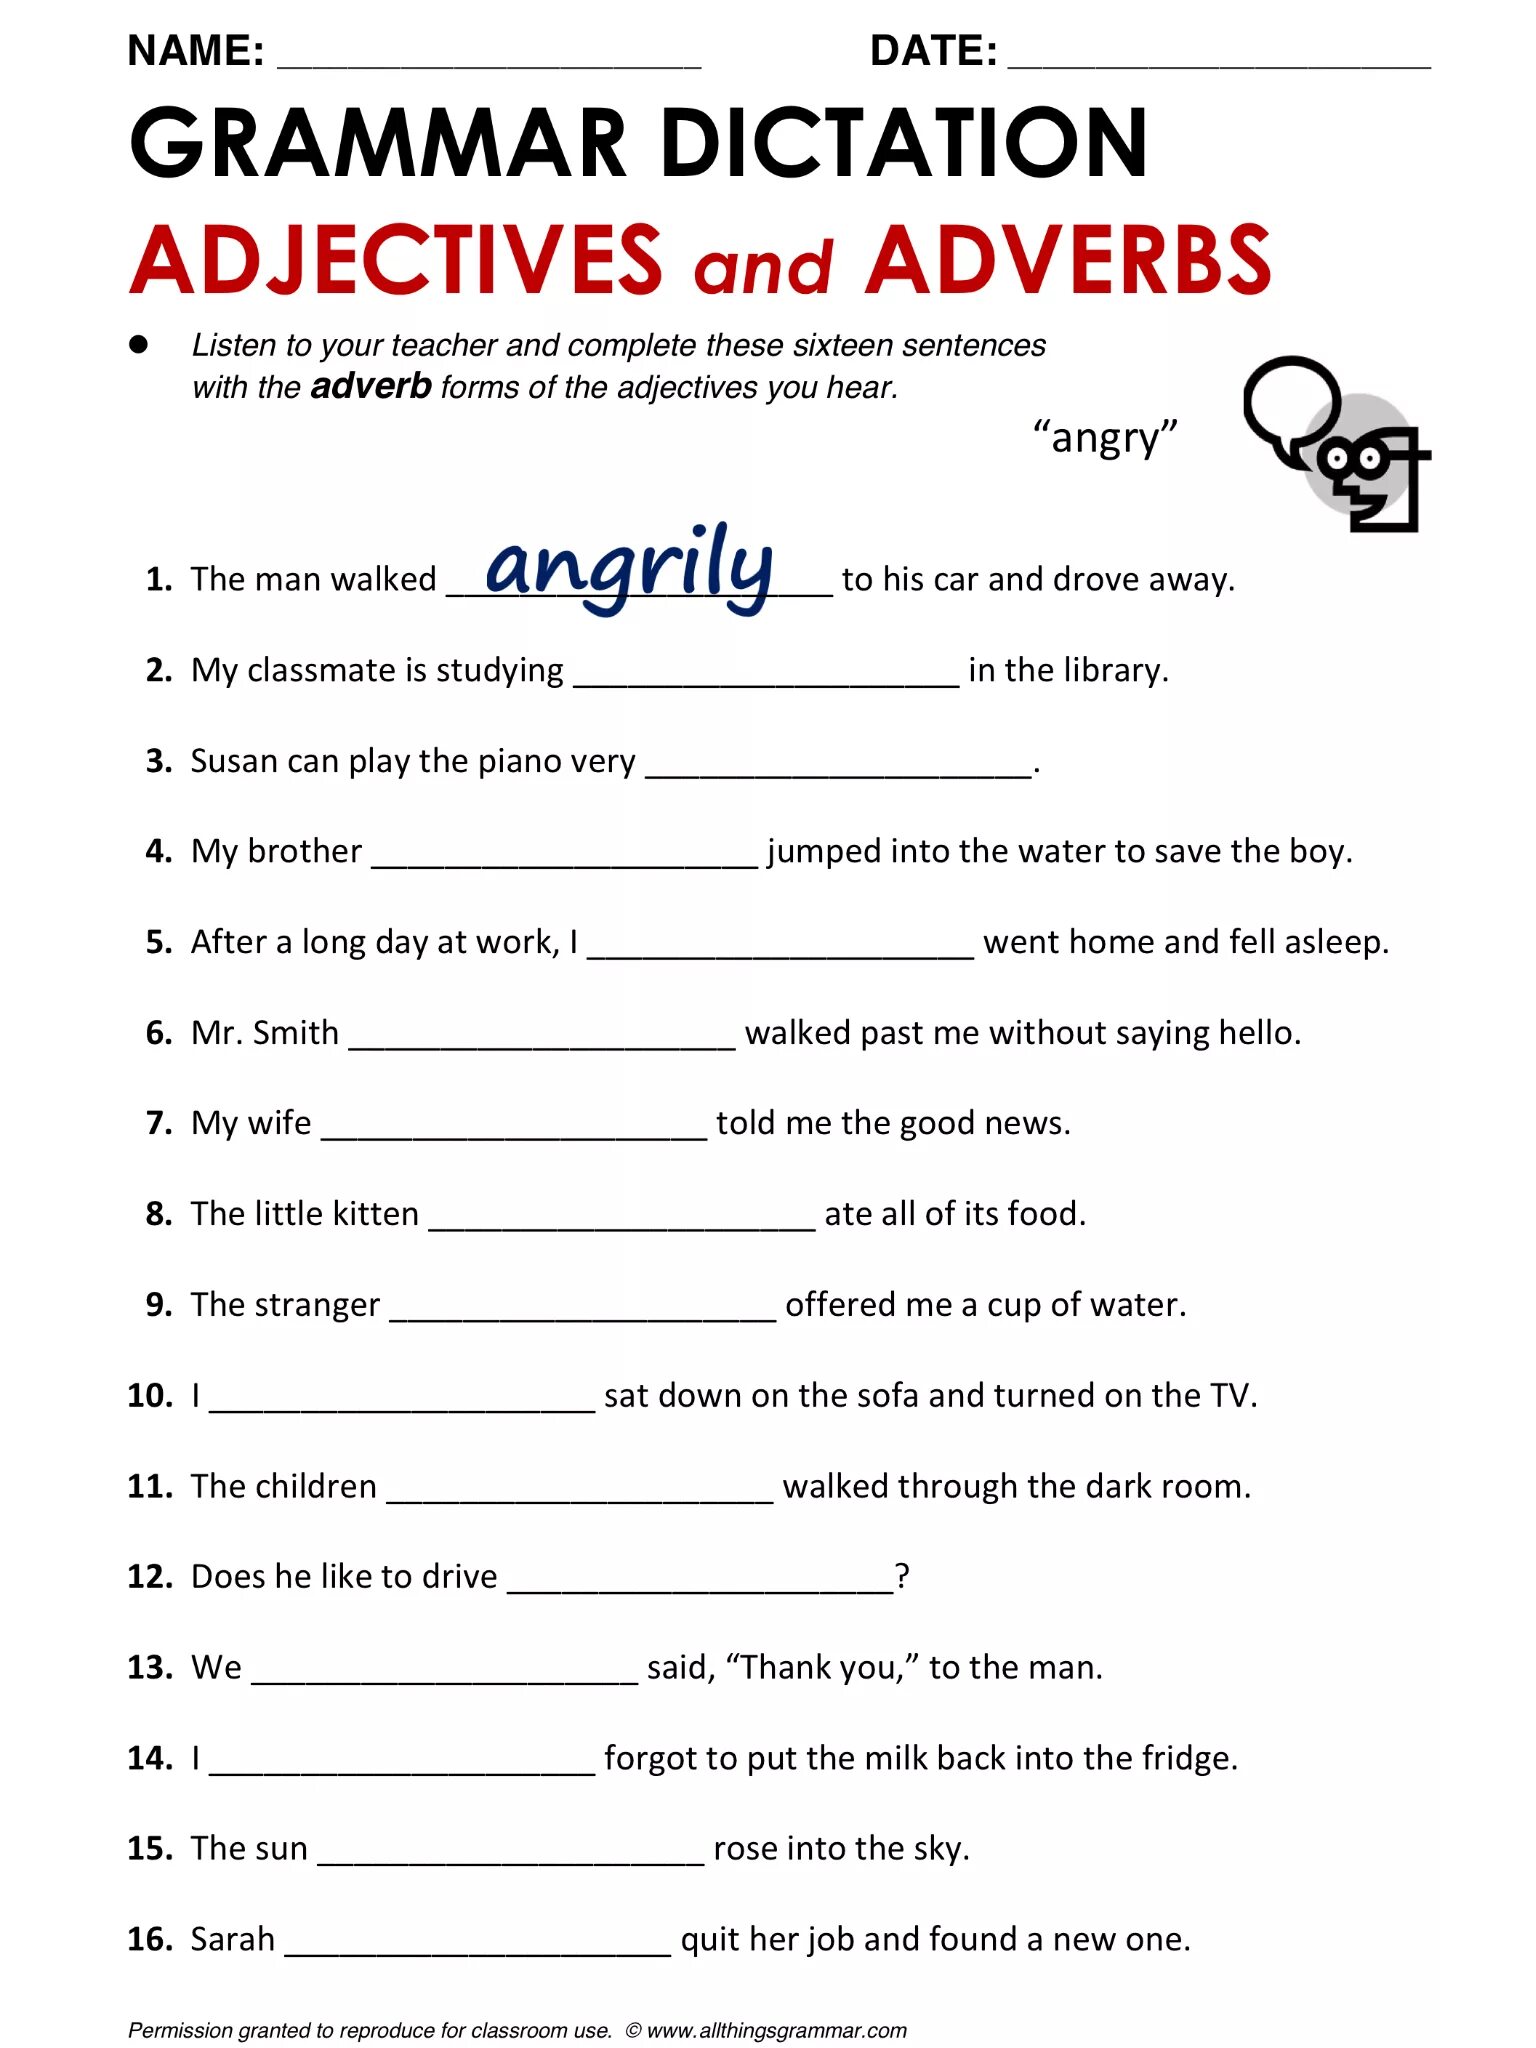 Наречия в английском языке Worksheets. Adjectives and adverbs Worksheets. Наречия в английском языке упражнения. Grammar exercises прилагательное. Adverbs task